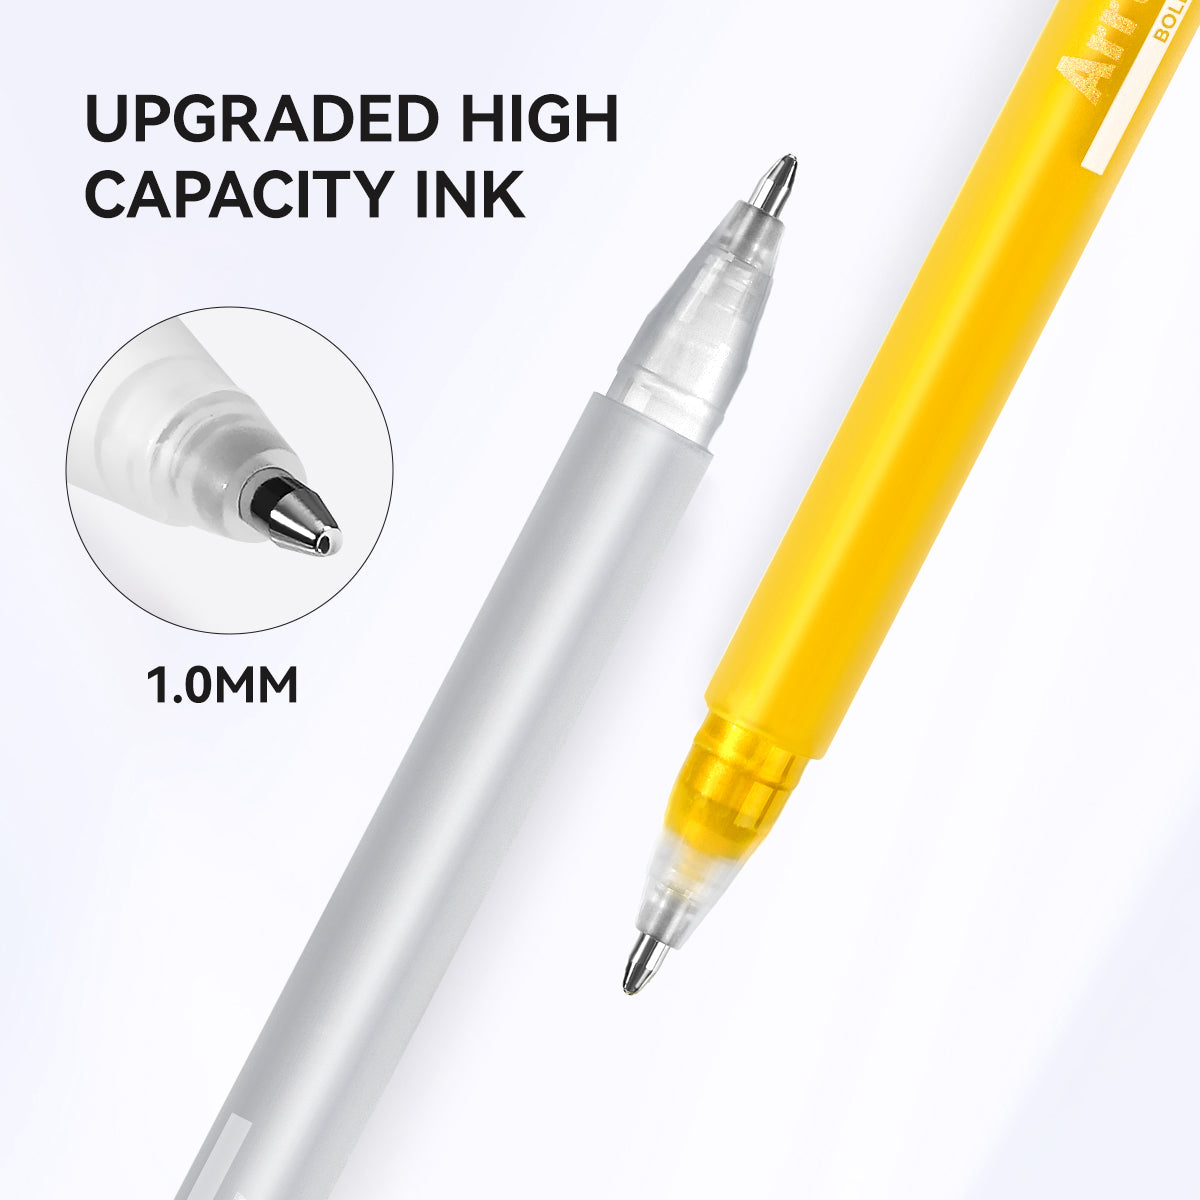 Arrtx Lot de 12 stylos à encre gel opaque, 3 couleurs, pointe audacieuse